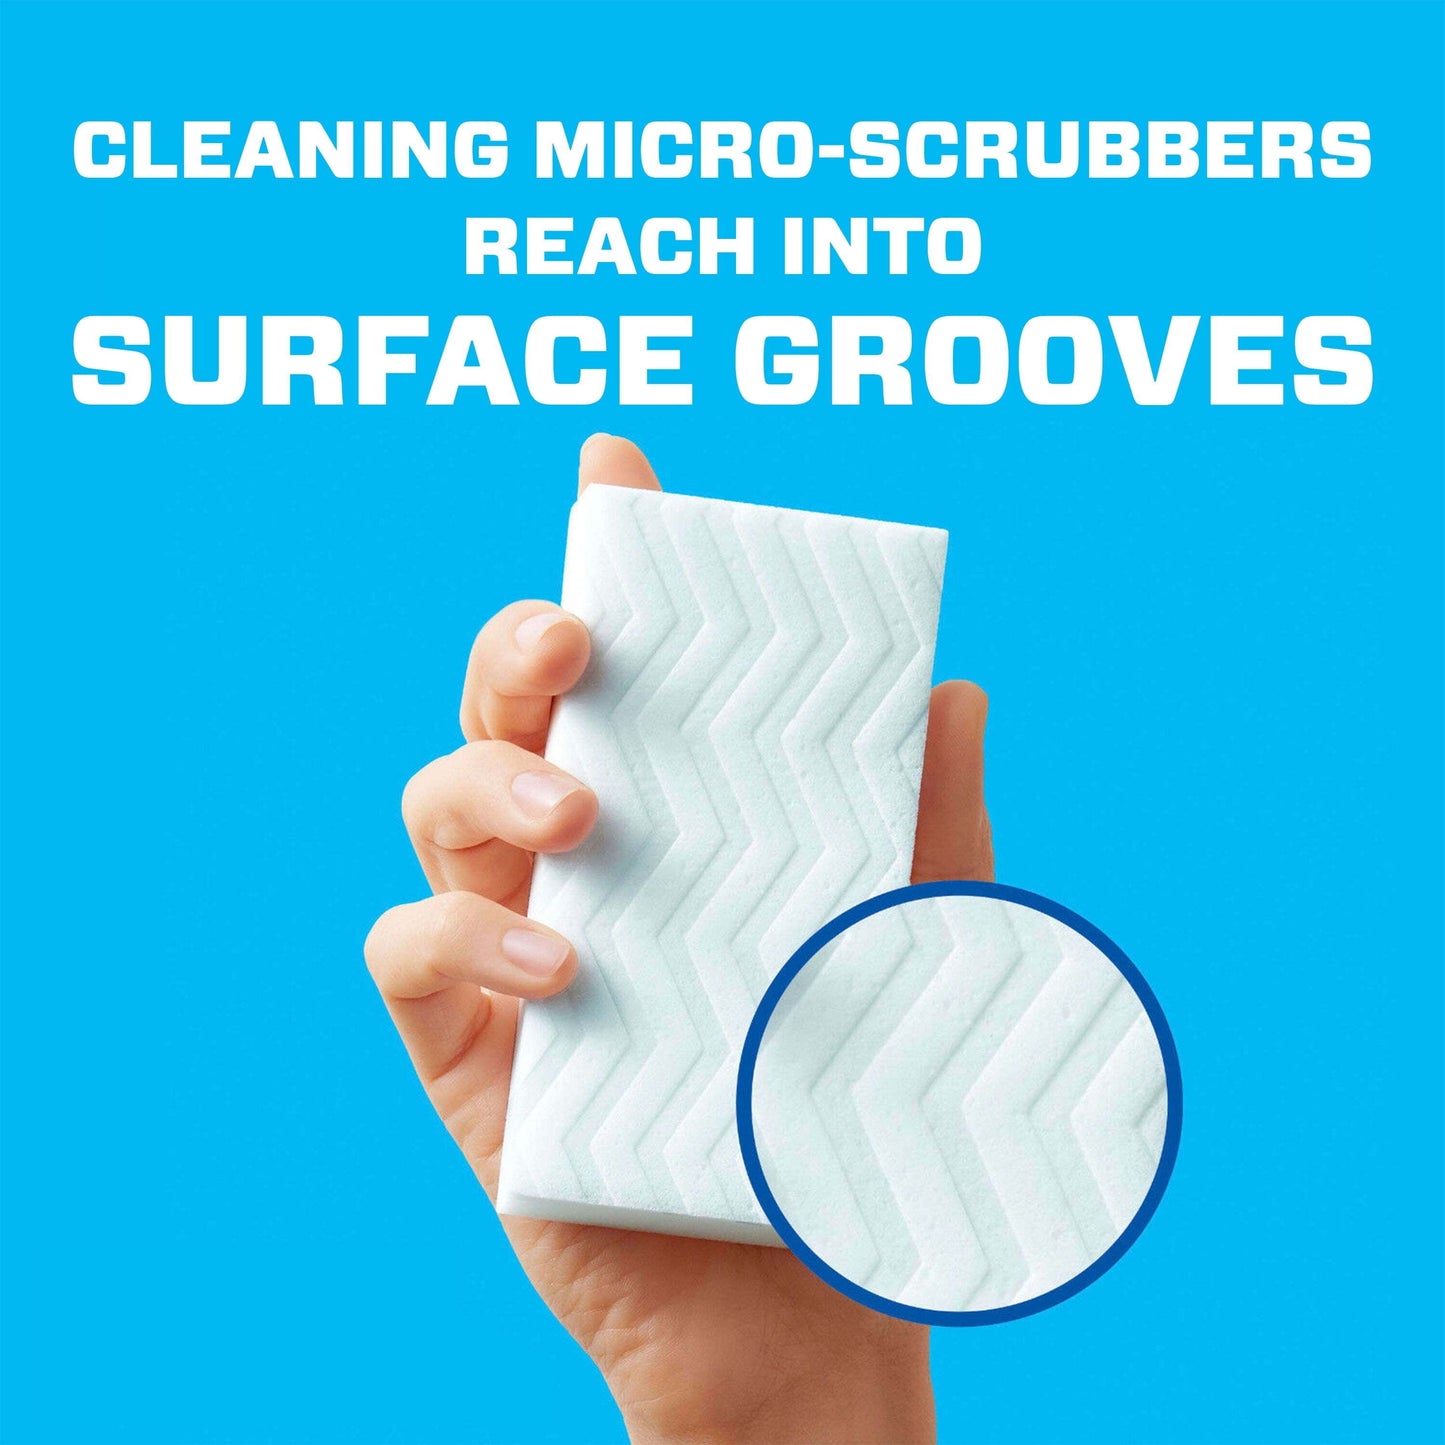 Mr. Clean Original Magic Eraser All-Purpose Foam Cleaning Pads with Durafoam, 3 Ct